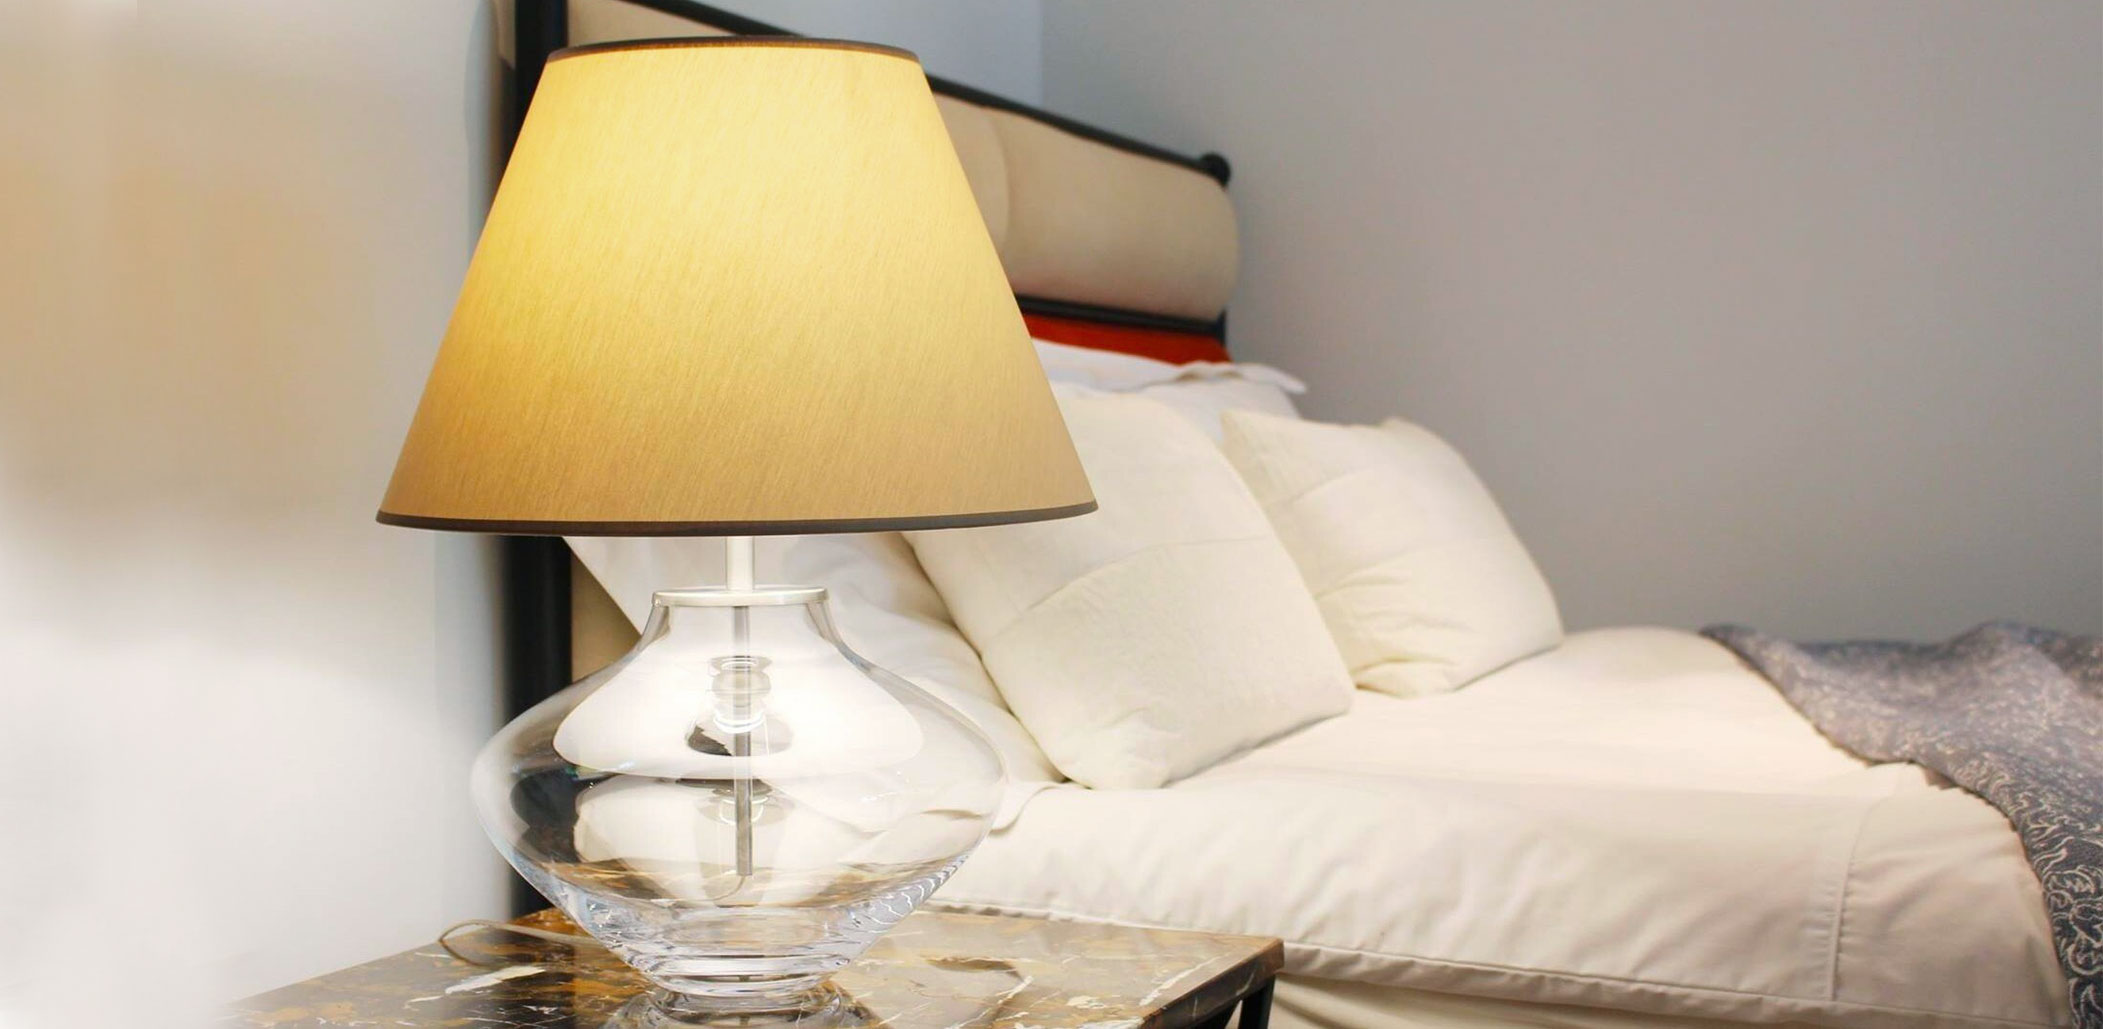 Gläserne Vasen-Tischleuchte mit Stoff-Schirm als Nachttischlampe am Bett